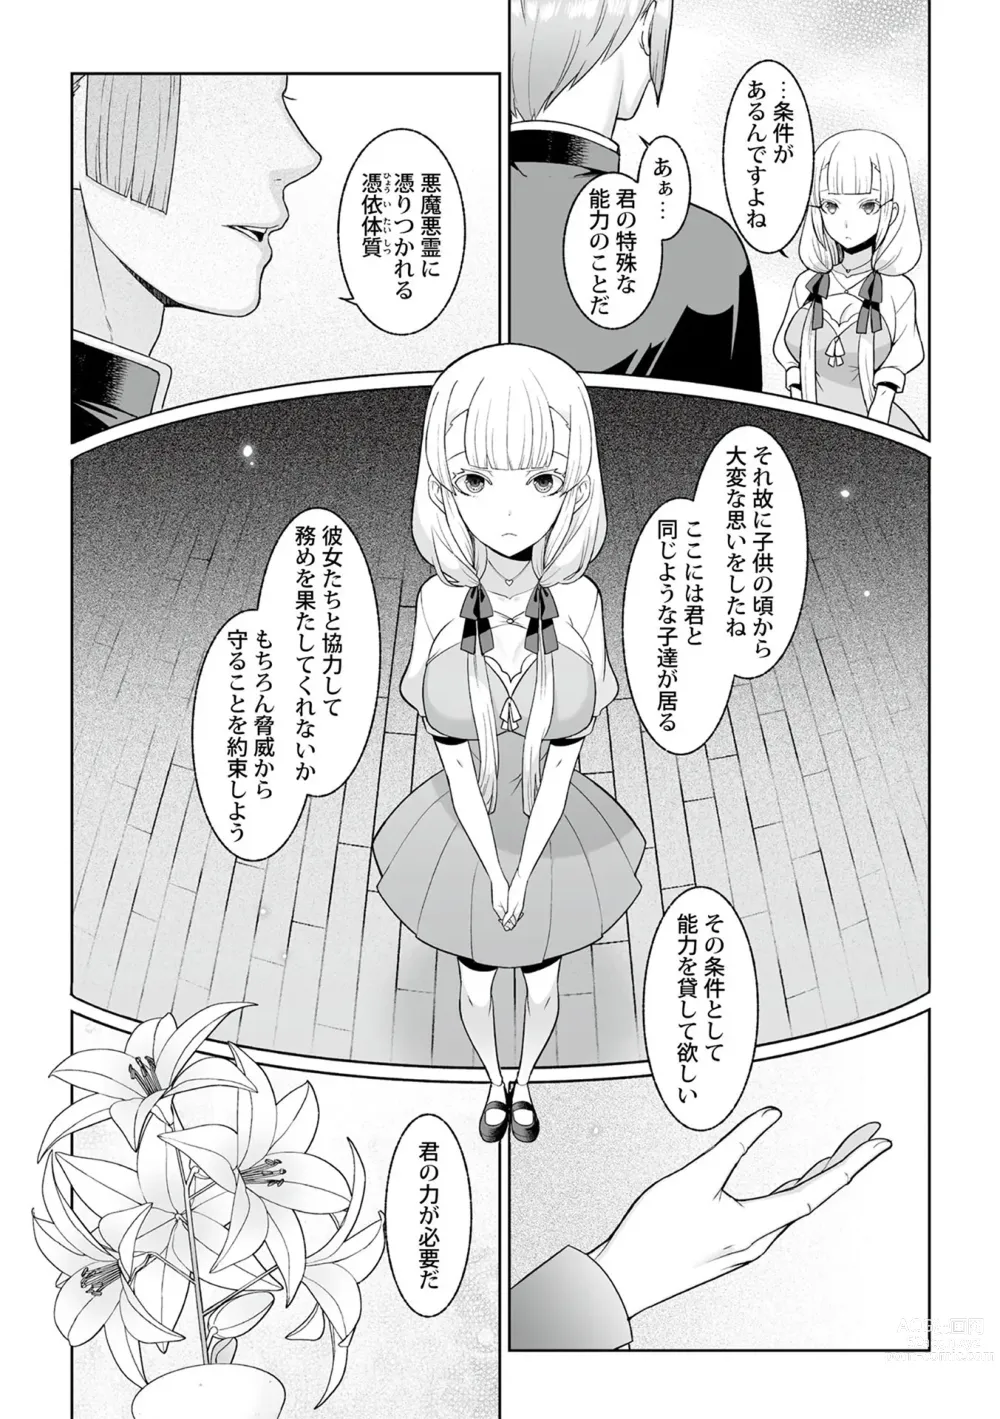 Page 11 of manga Tsukitei no Seijo Inmitsu no Utage 1